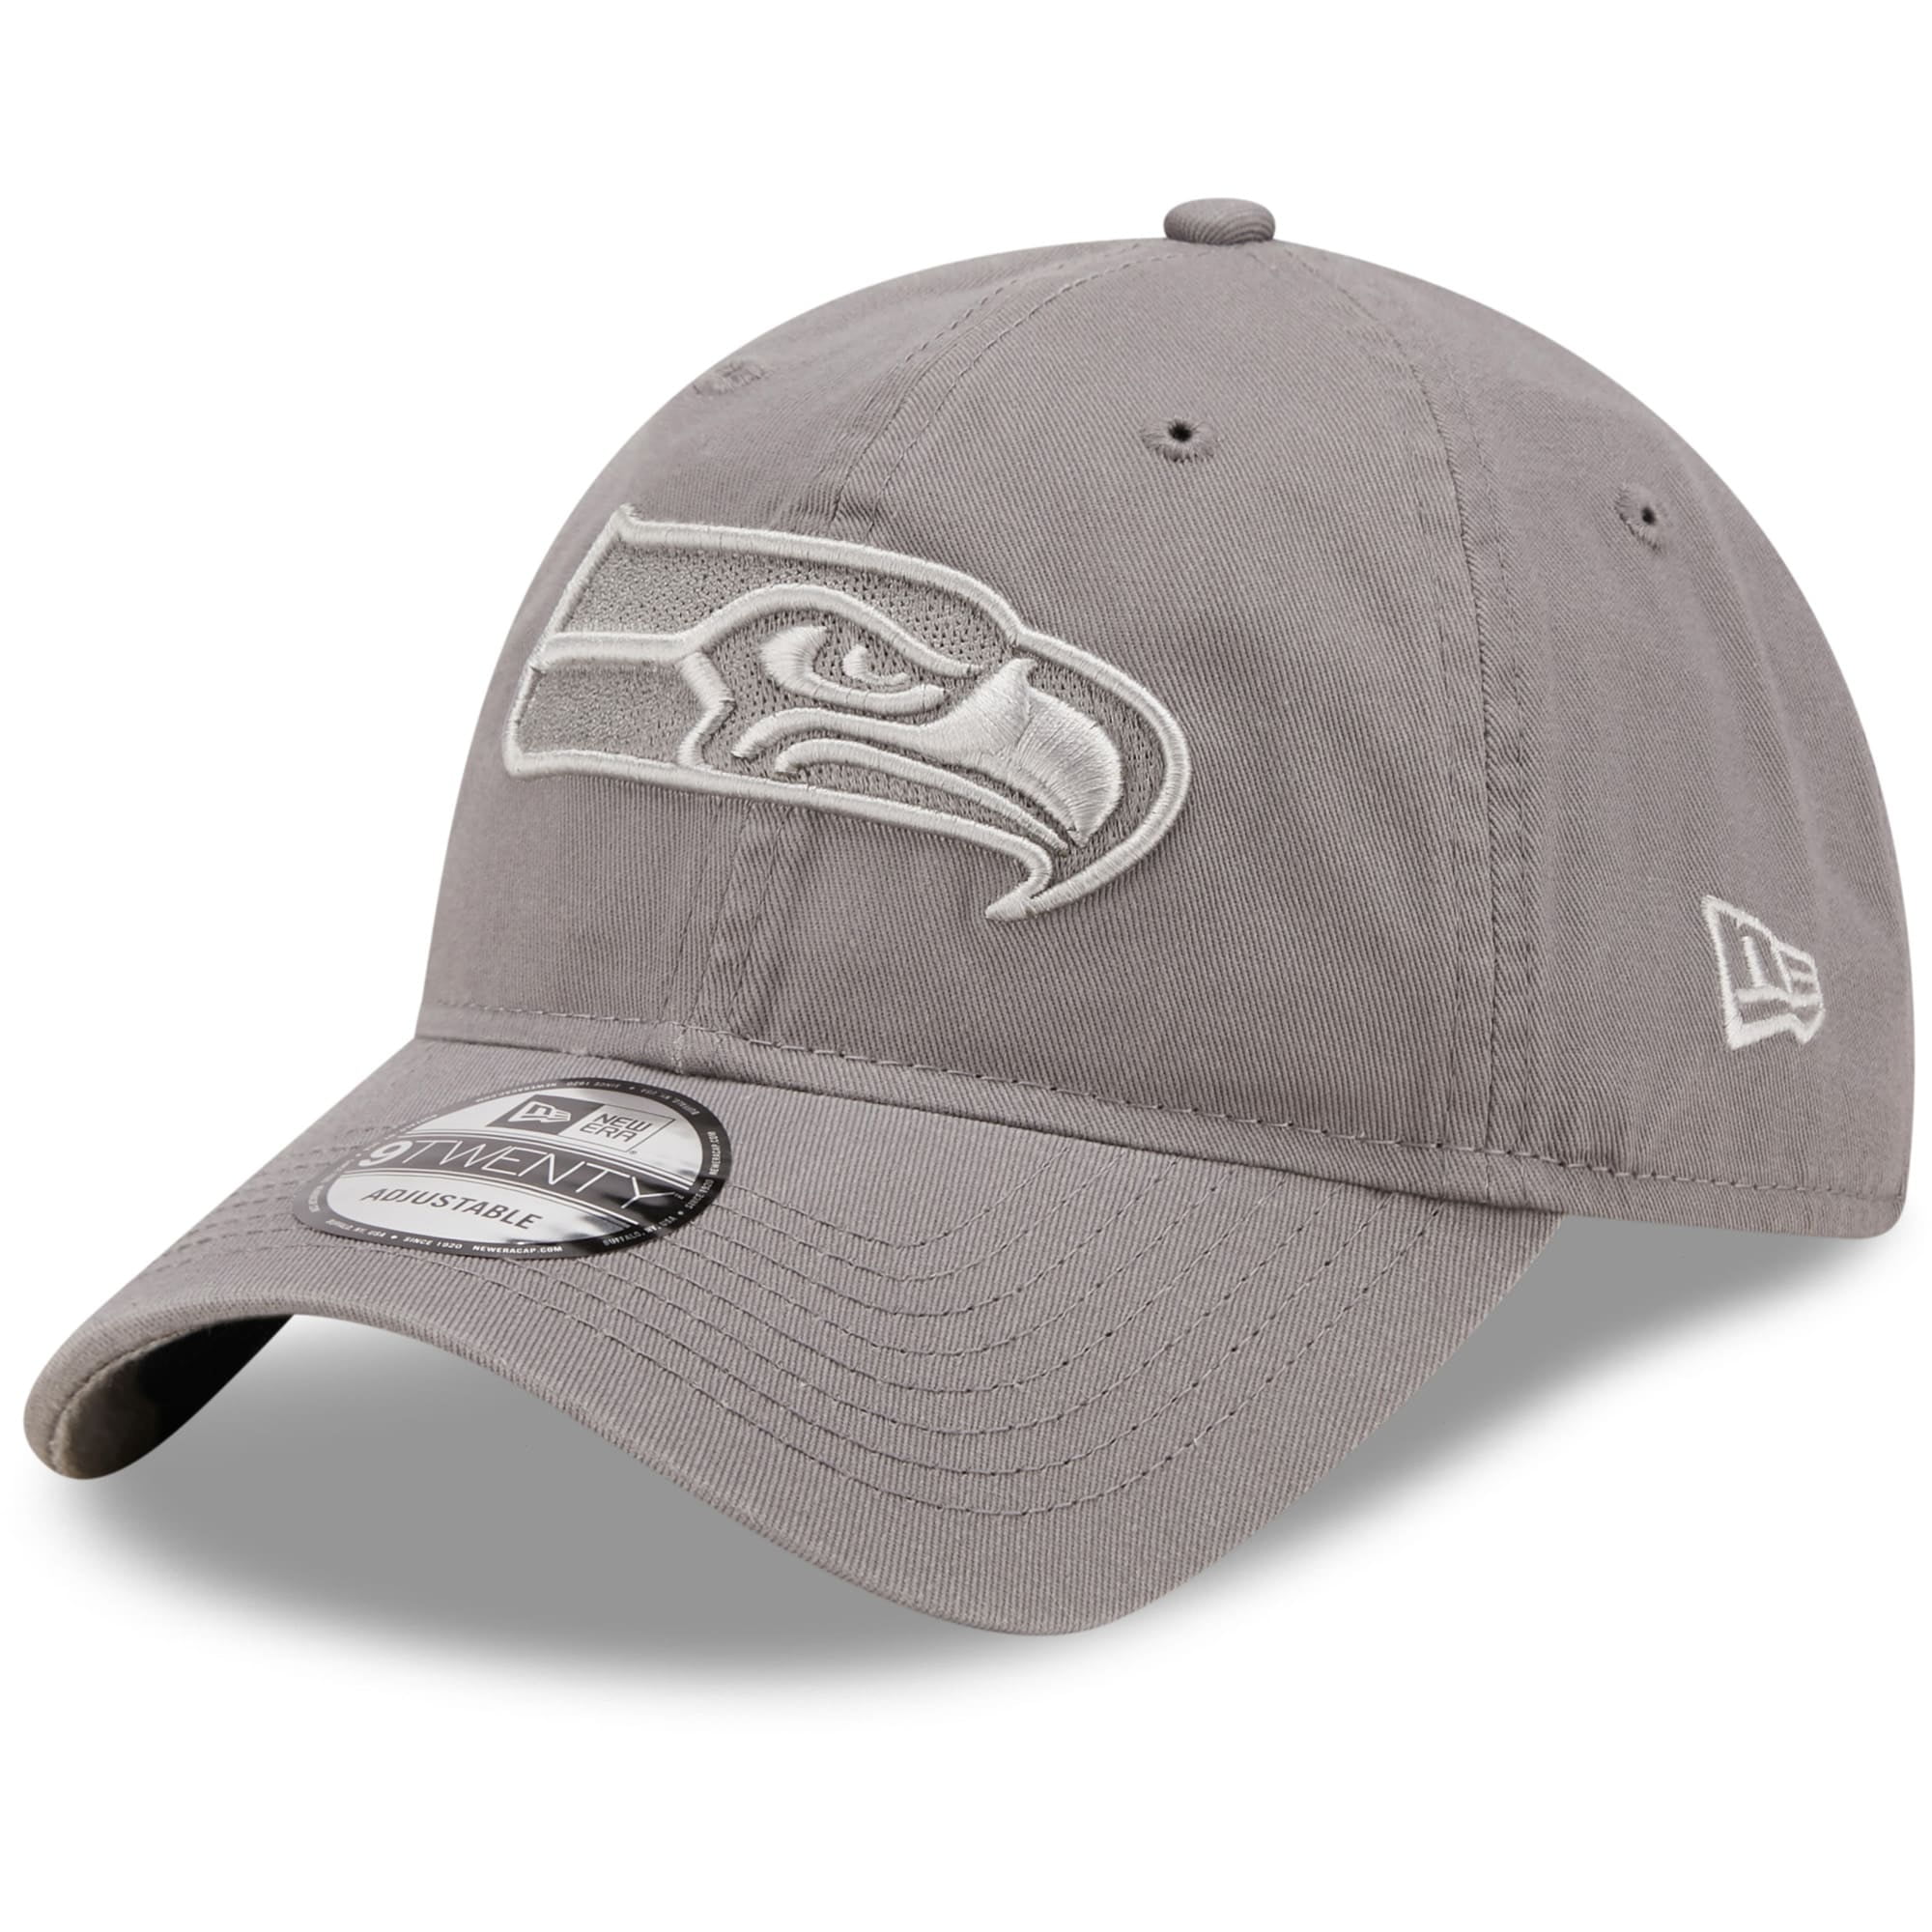 seahawks cap grey